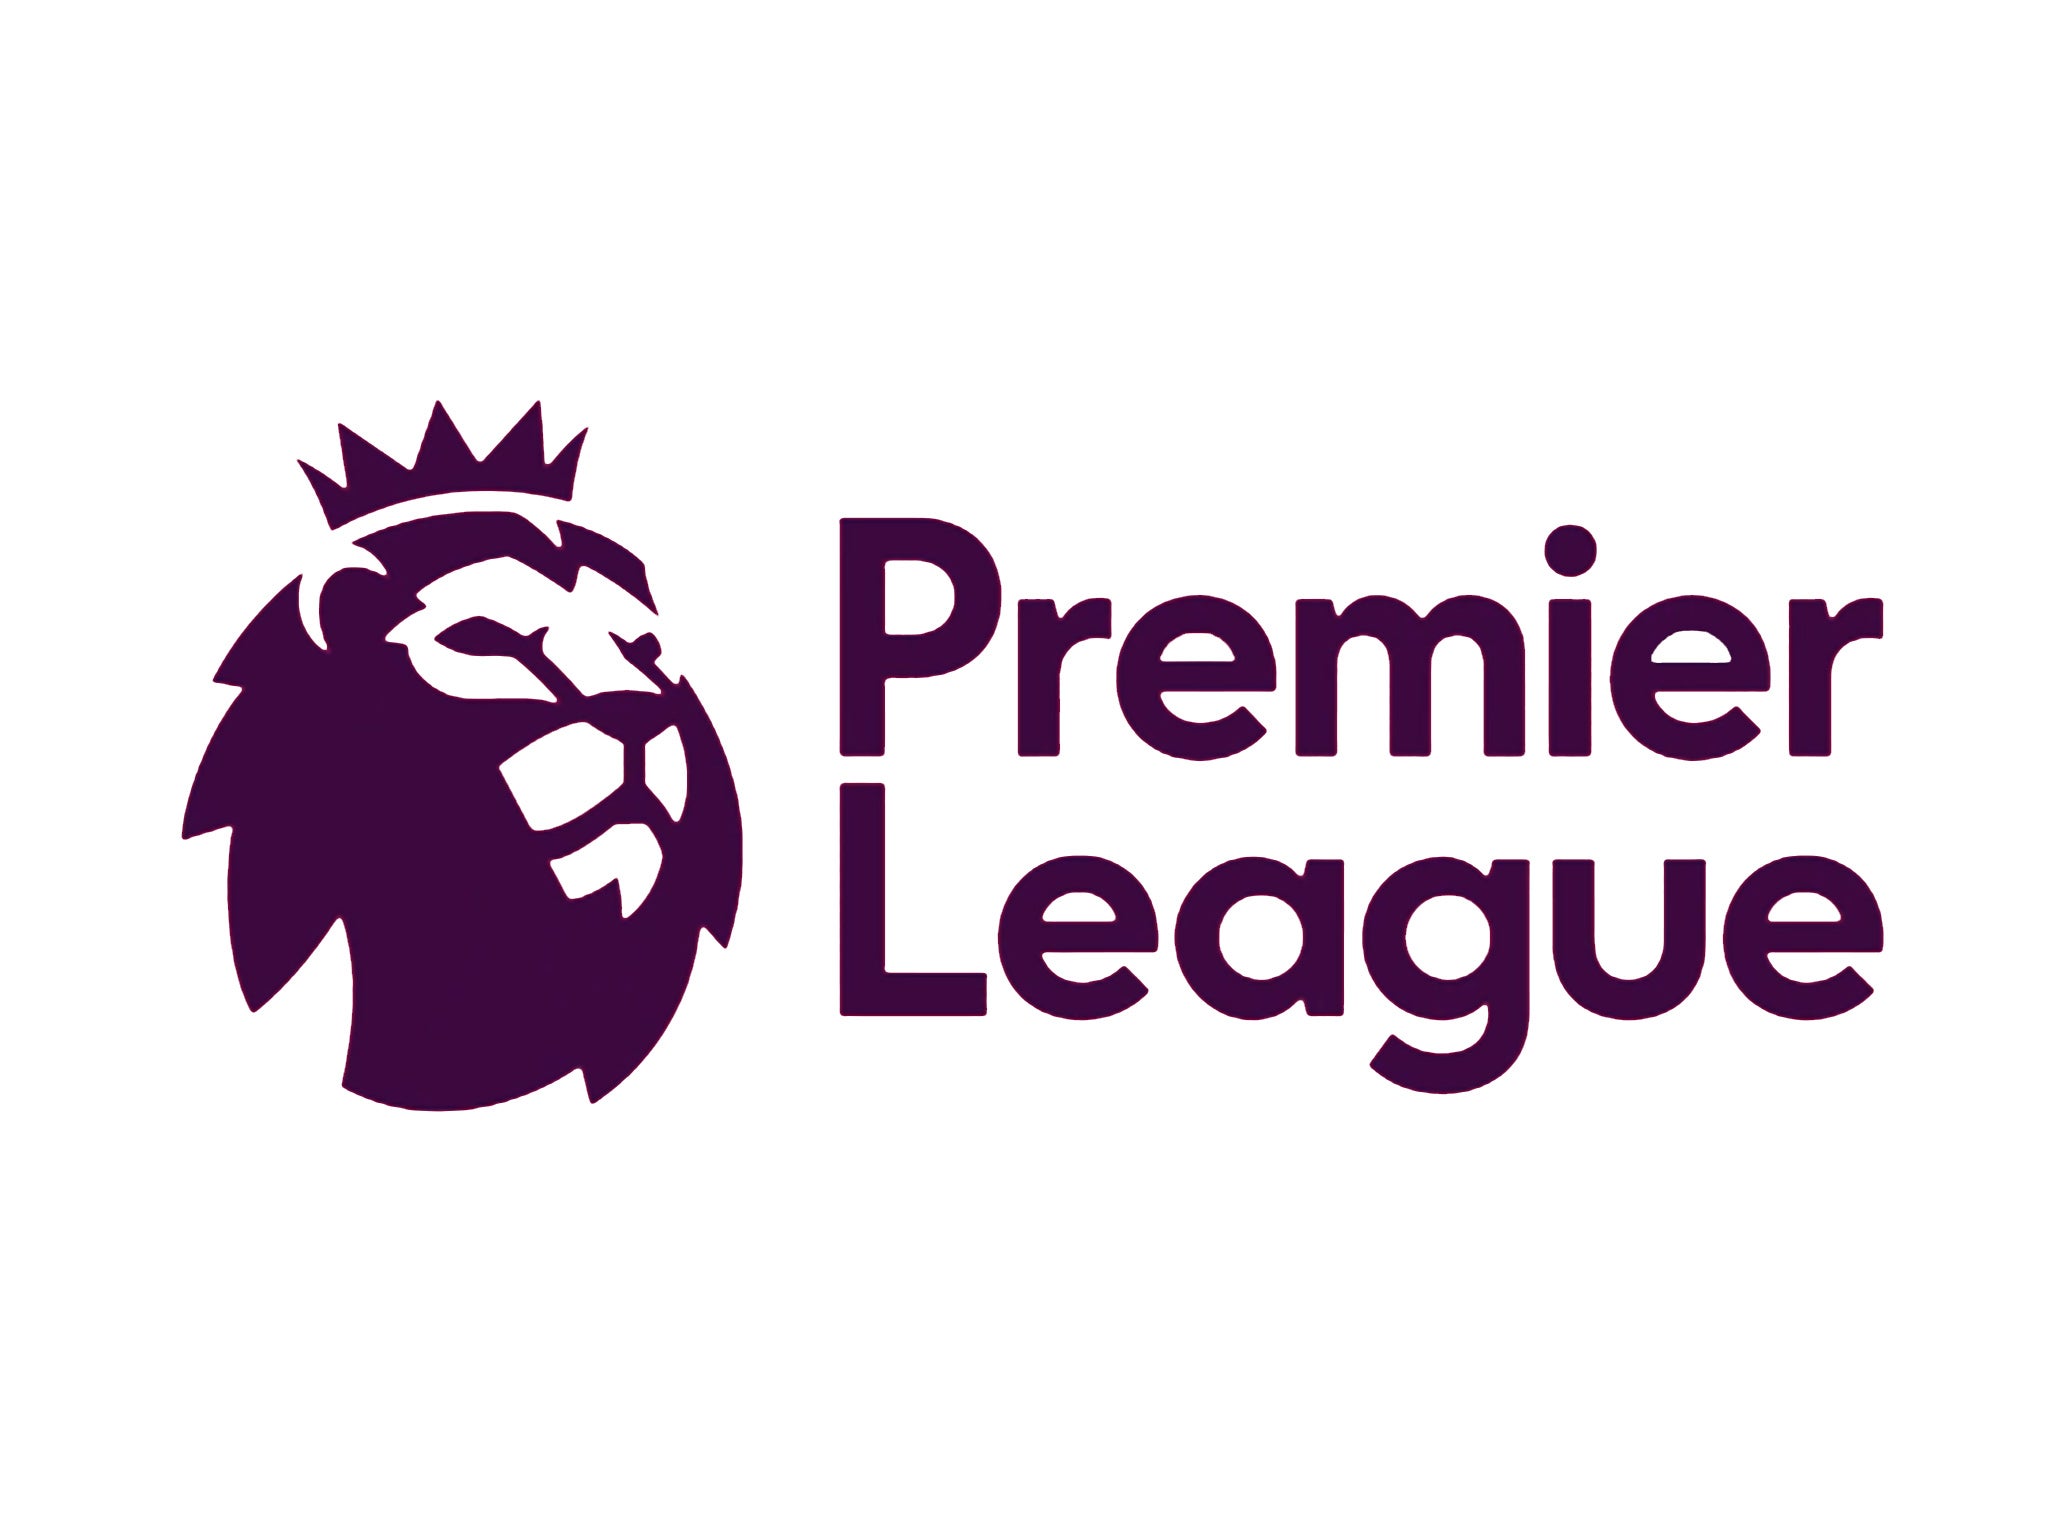 The new Premier League logo